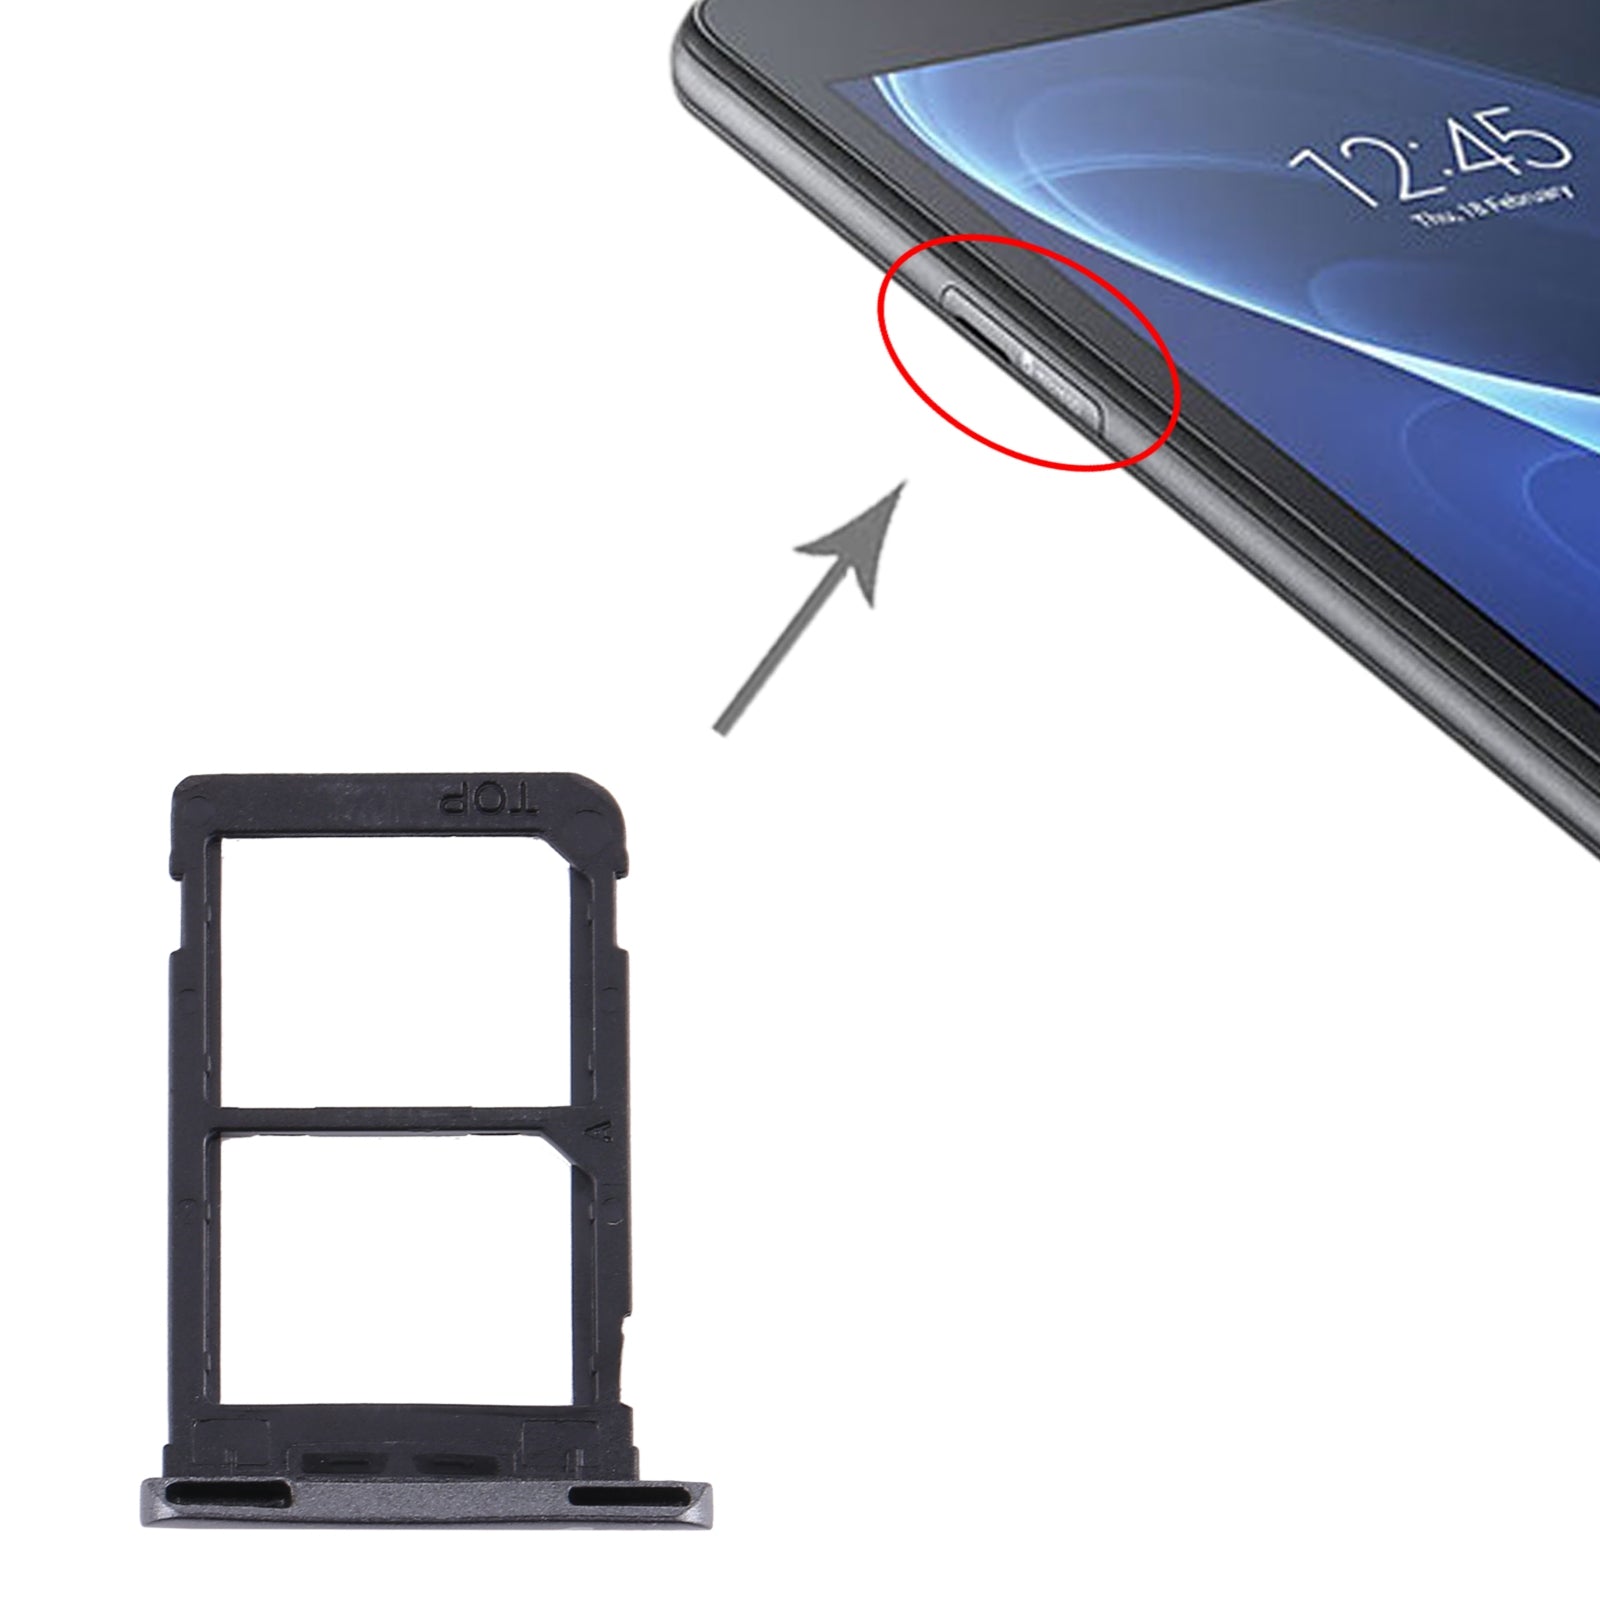 Dual SIM SIM Holder Tray Samsung Galaxy Tab A 7.0 2016 T285 Black